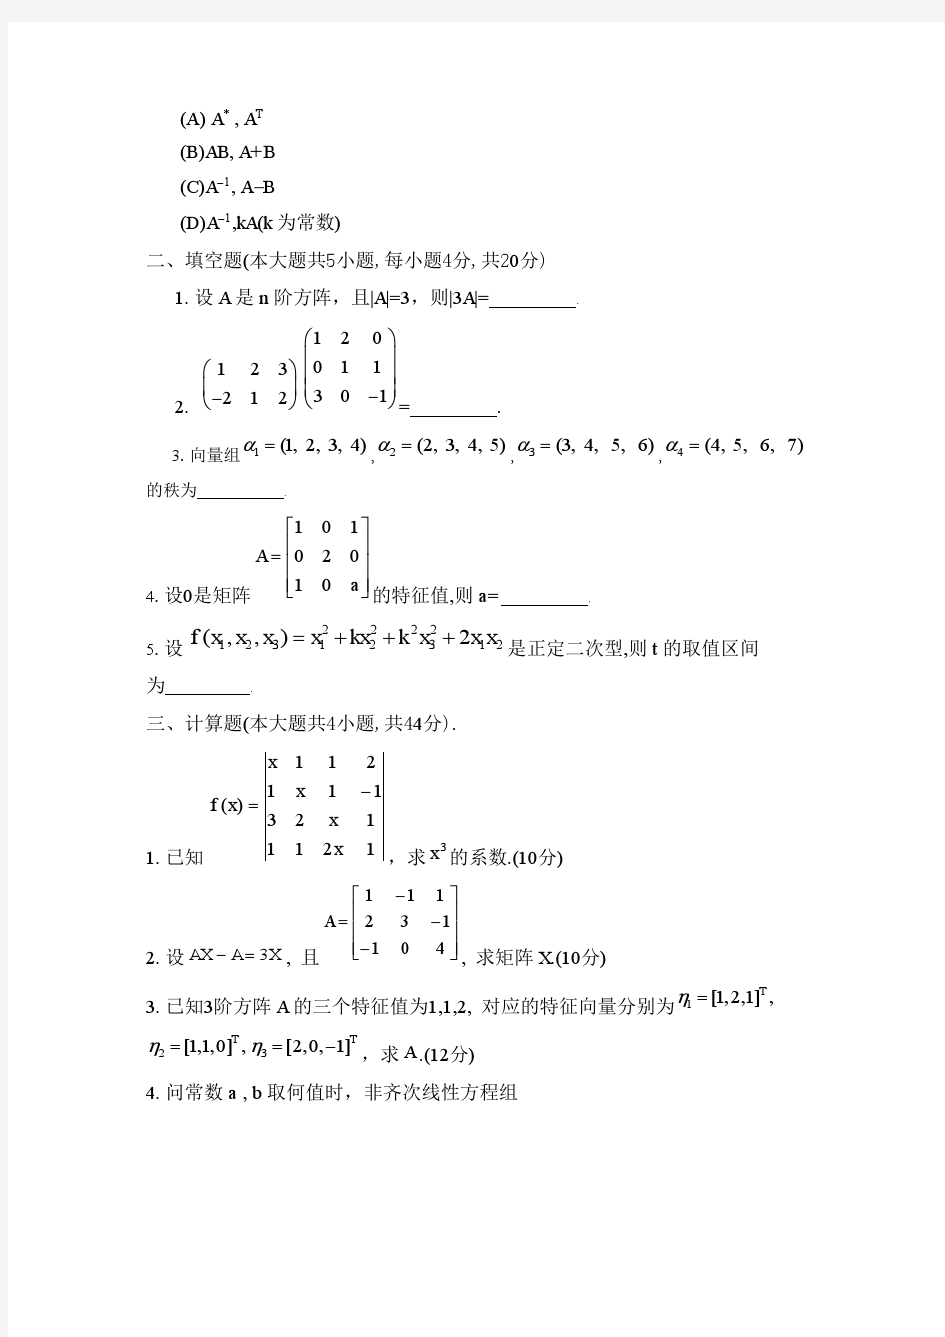 四川大学网络教育学院 工程数学基础(1) 模拟题1